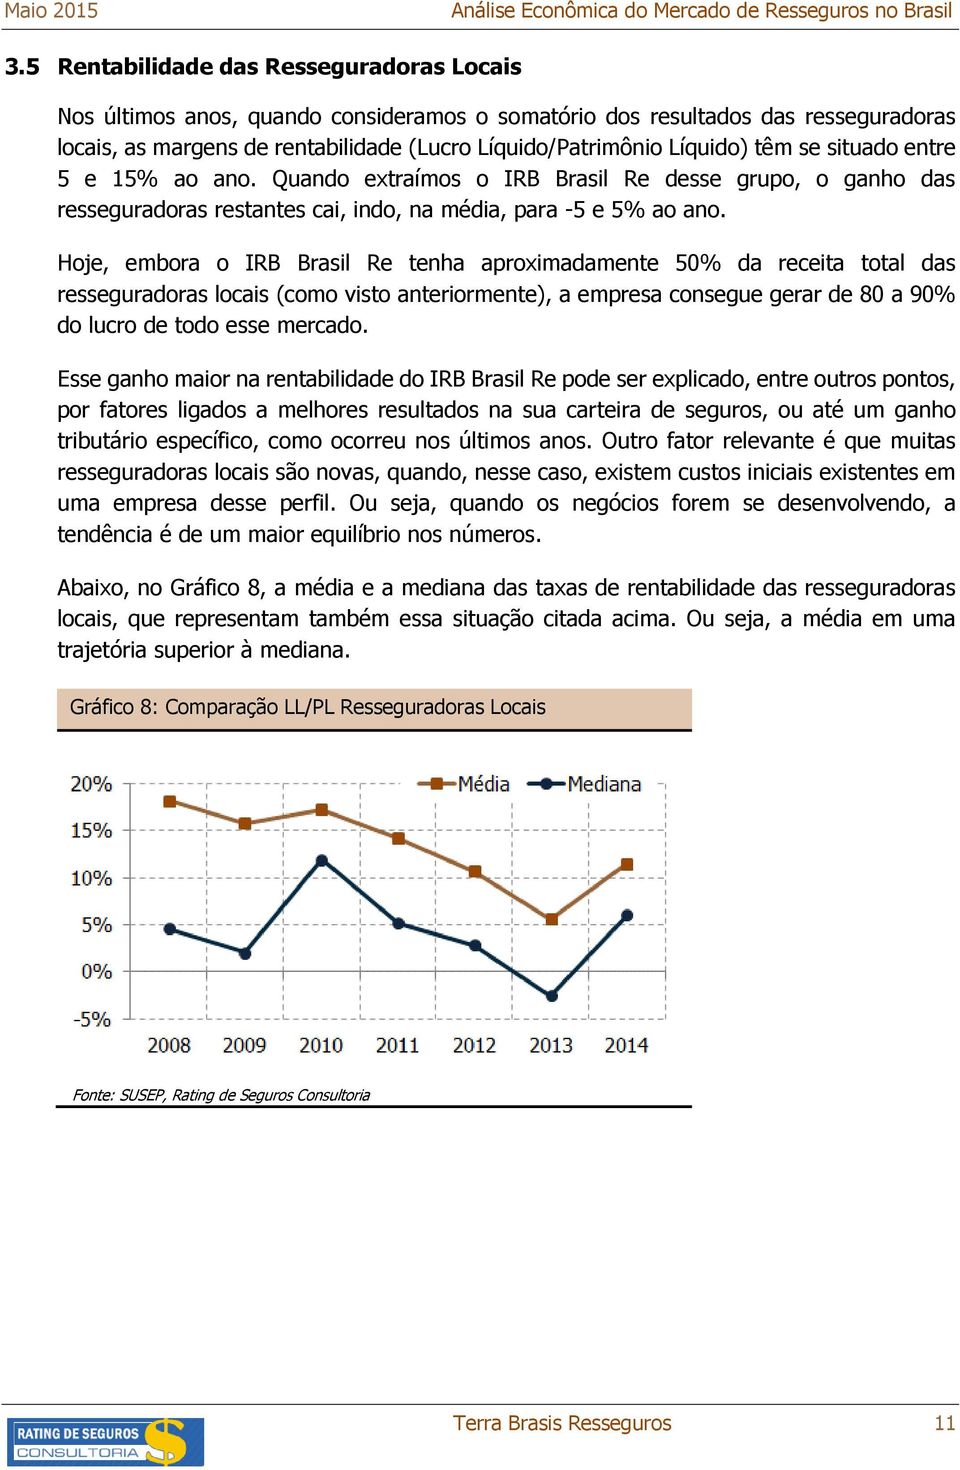 Hoje, embora o IRB Brasil Re tenha aproximadamente 50% da receita total das resseguradoras locais (como visto anteriormente), a empresa consegue gerar de 80 a 90% do lucro de todo esse mercado.